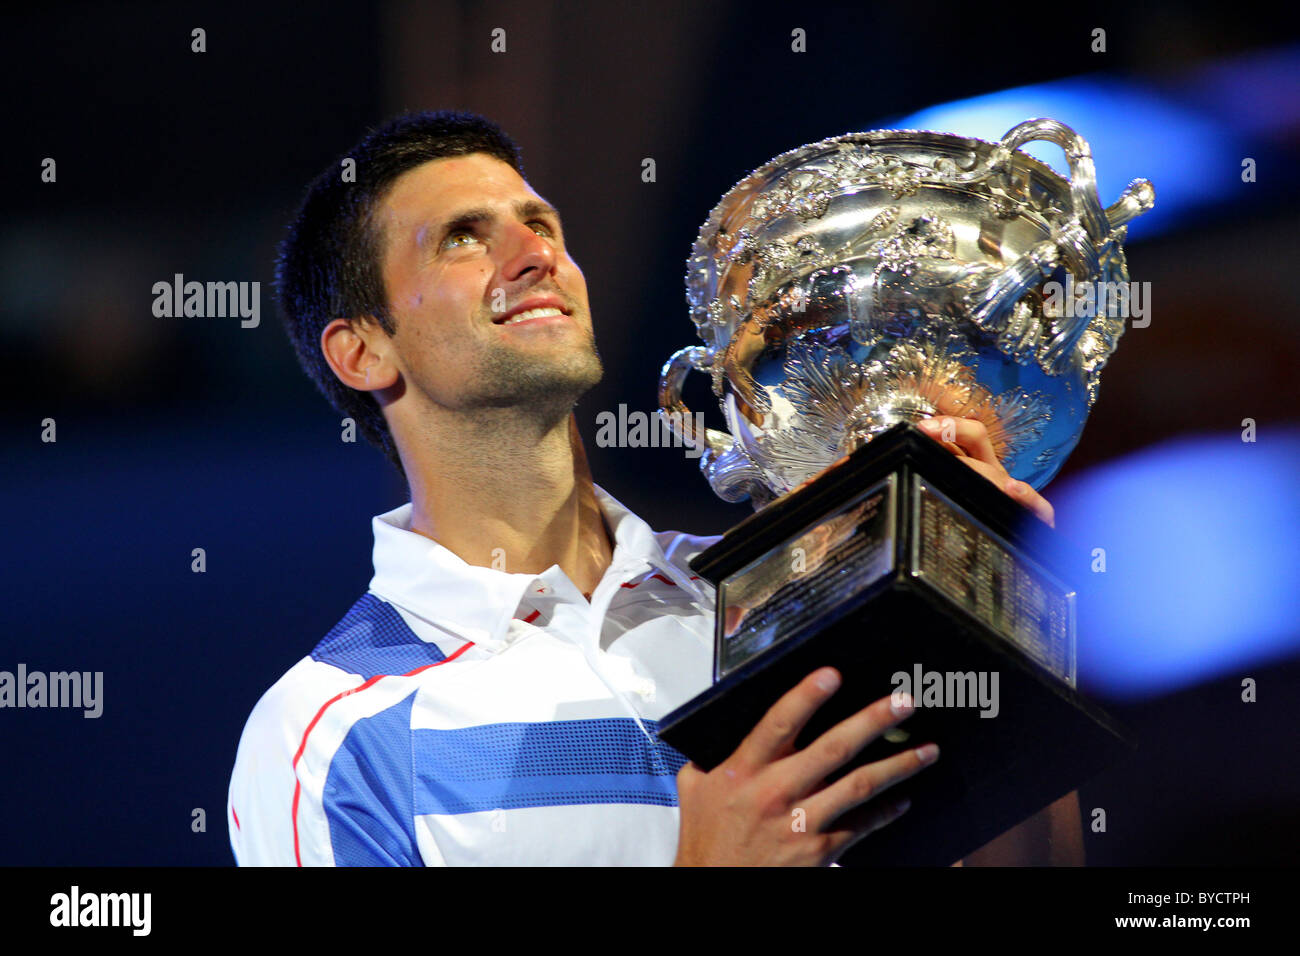 bakke det samme Skrøbelig Djokovic australian open trophy hi-res stock photography and images - Alamy